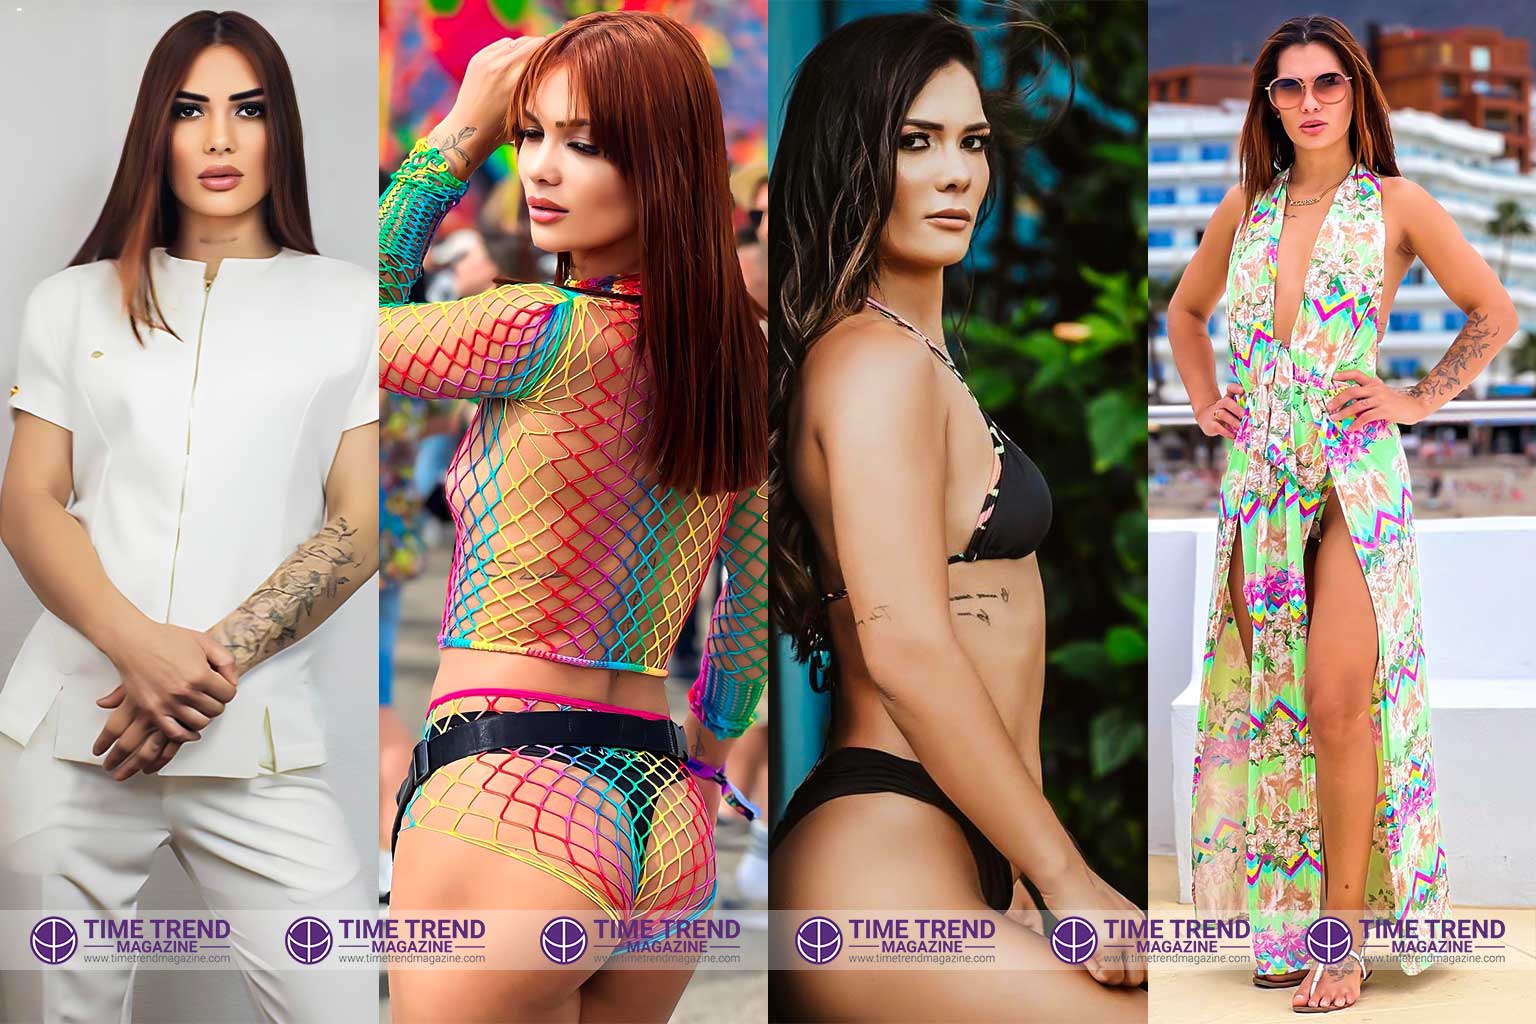 Meet Helena the Sexiest Model in Brazil.